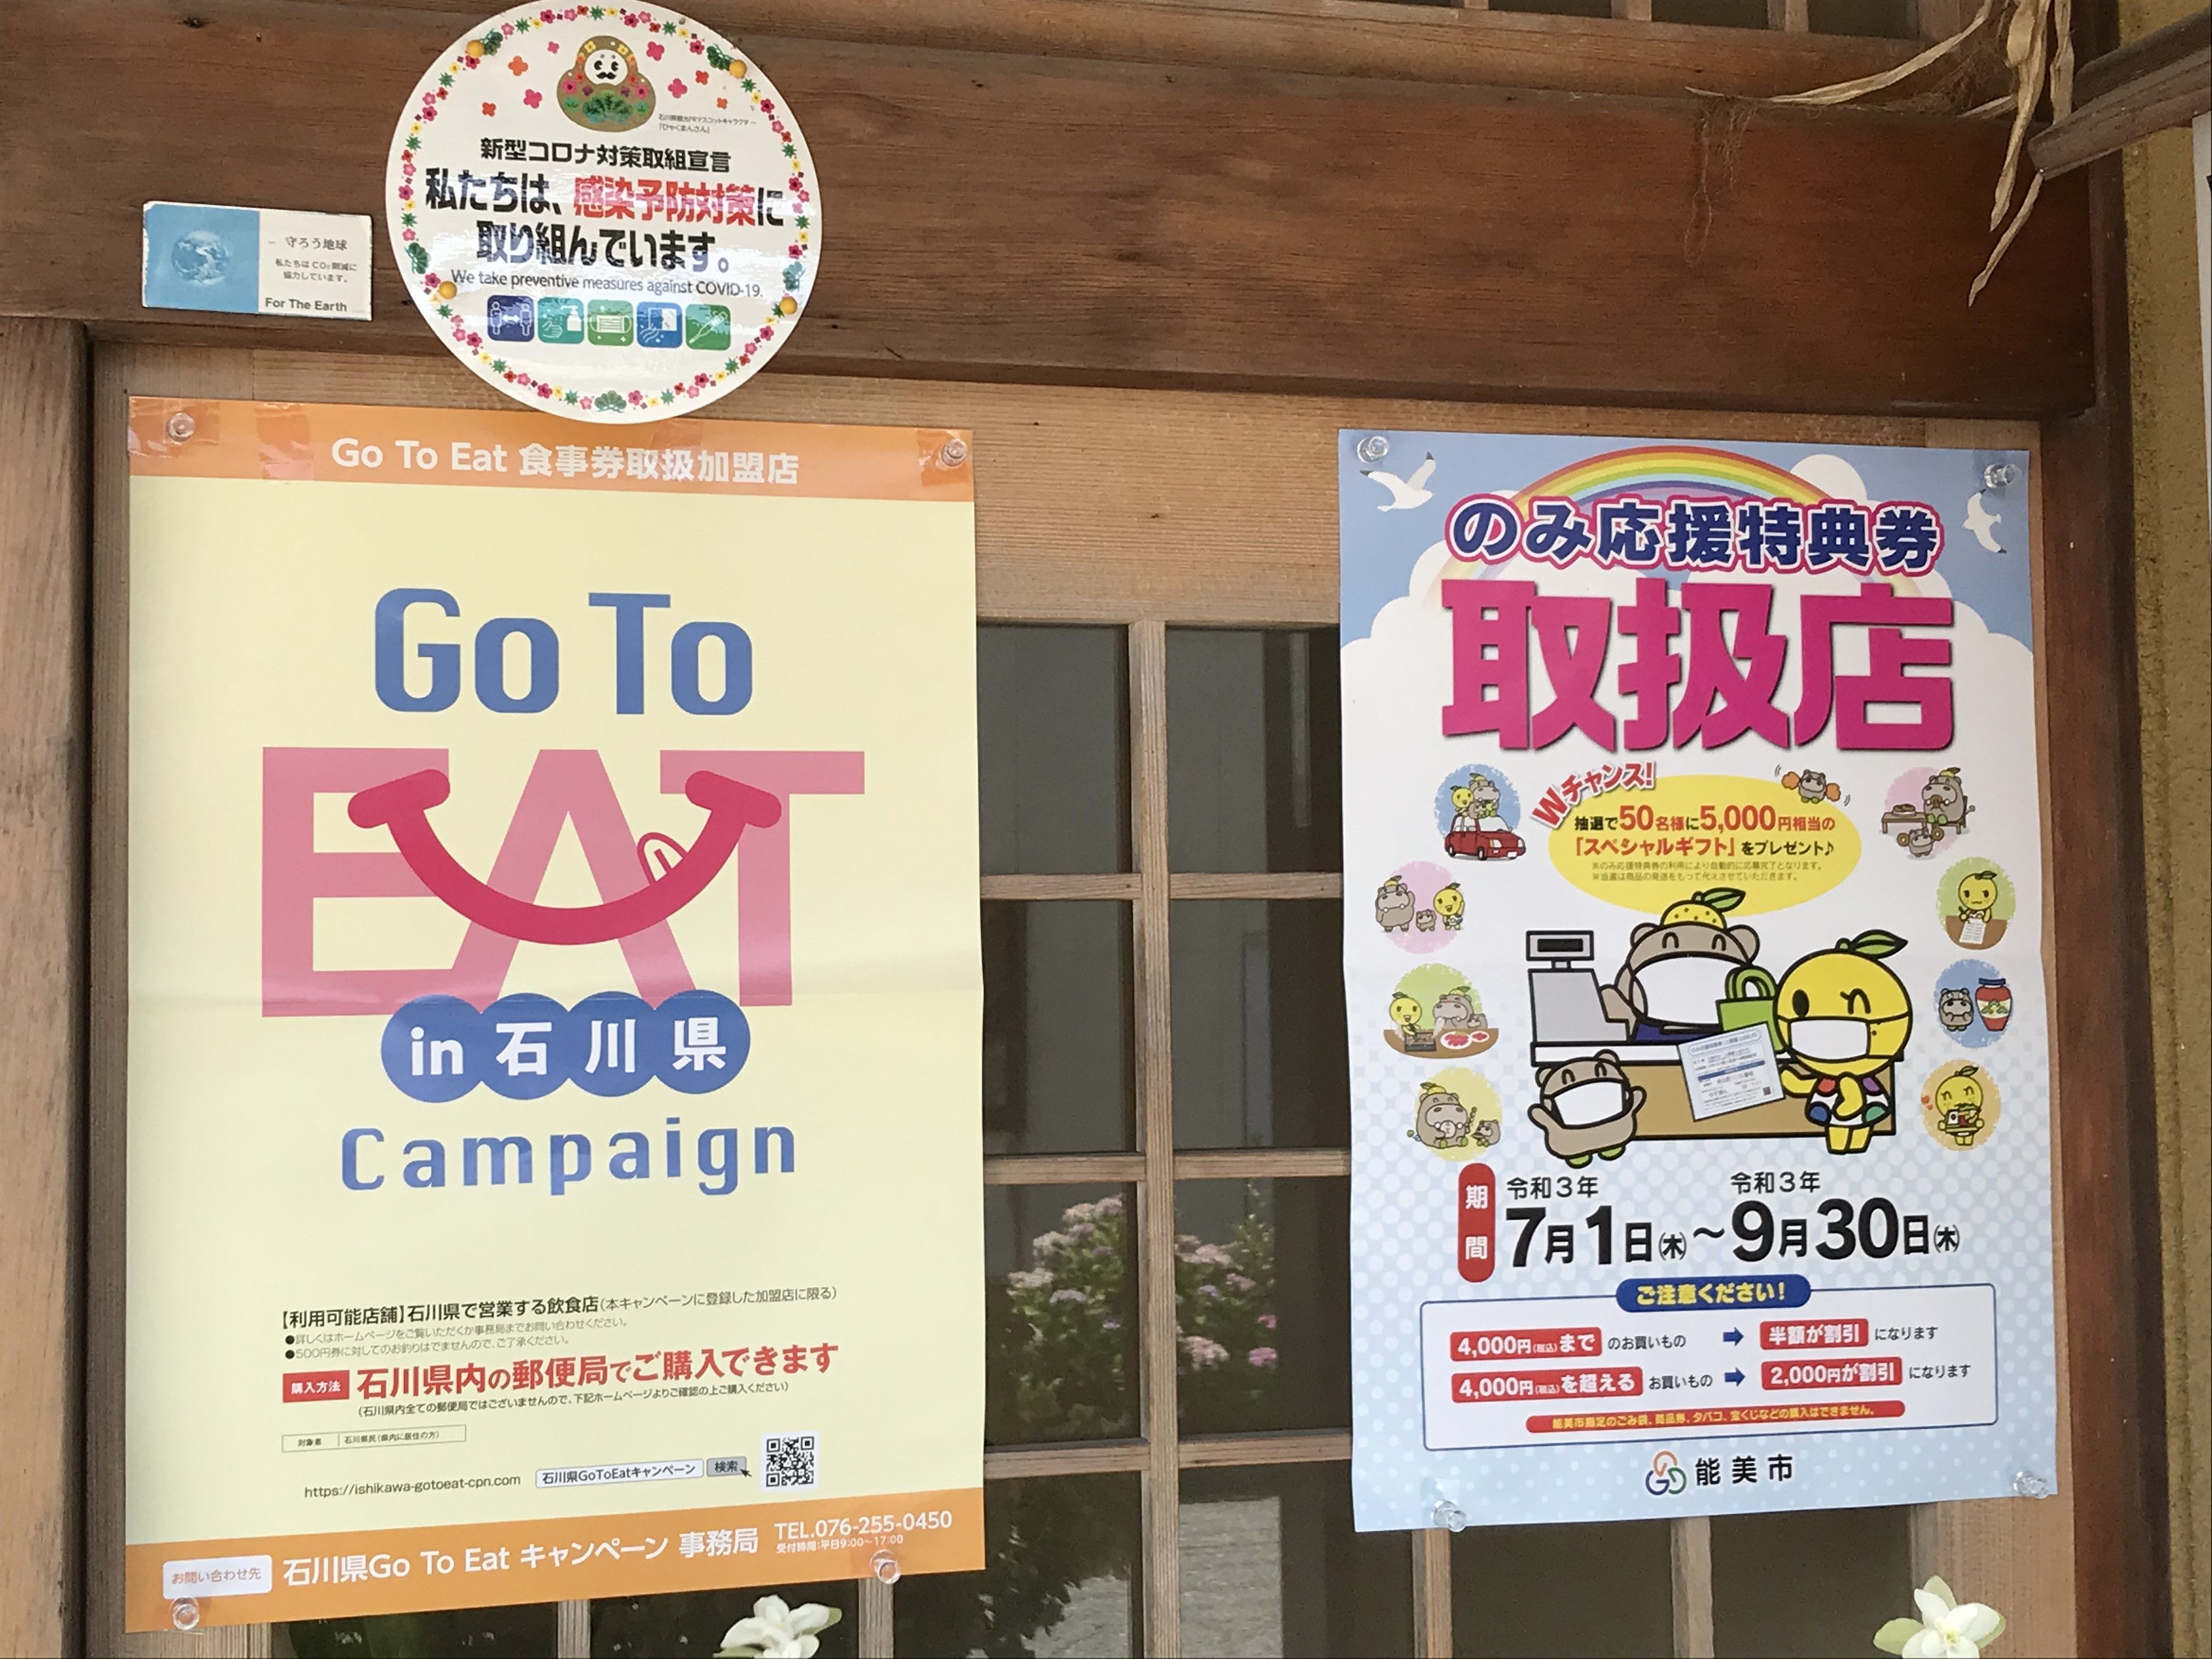 能美応援特典券、石川県Go to eat キャンペーン 食事券のお知らせ。